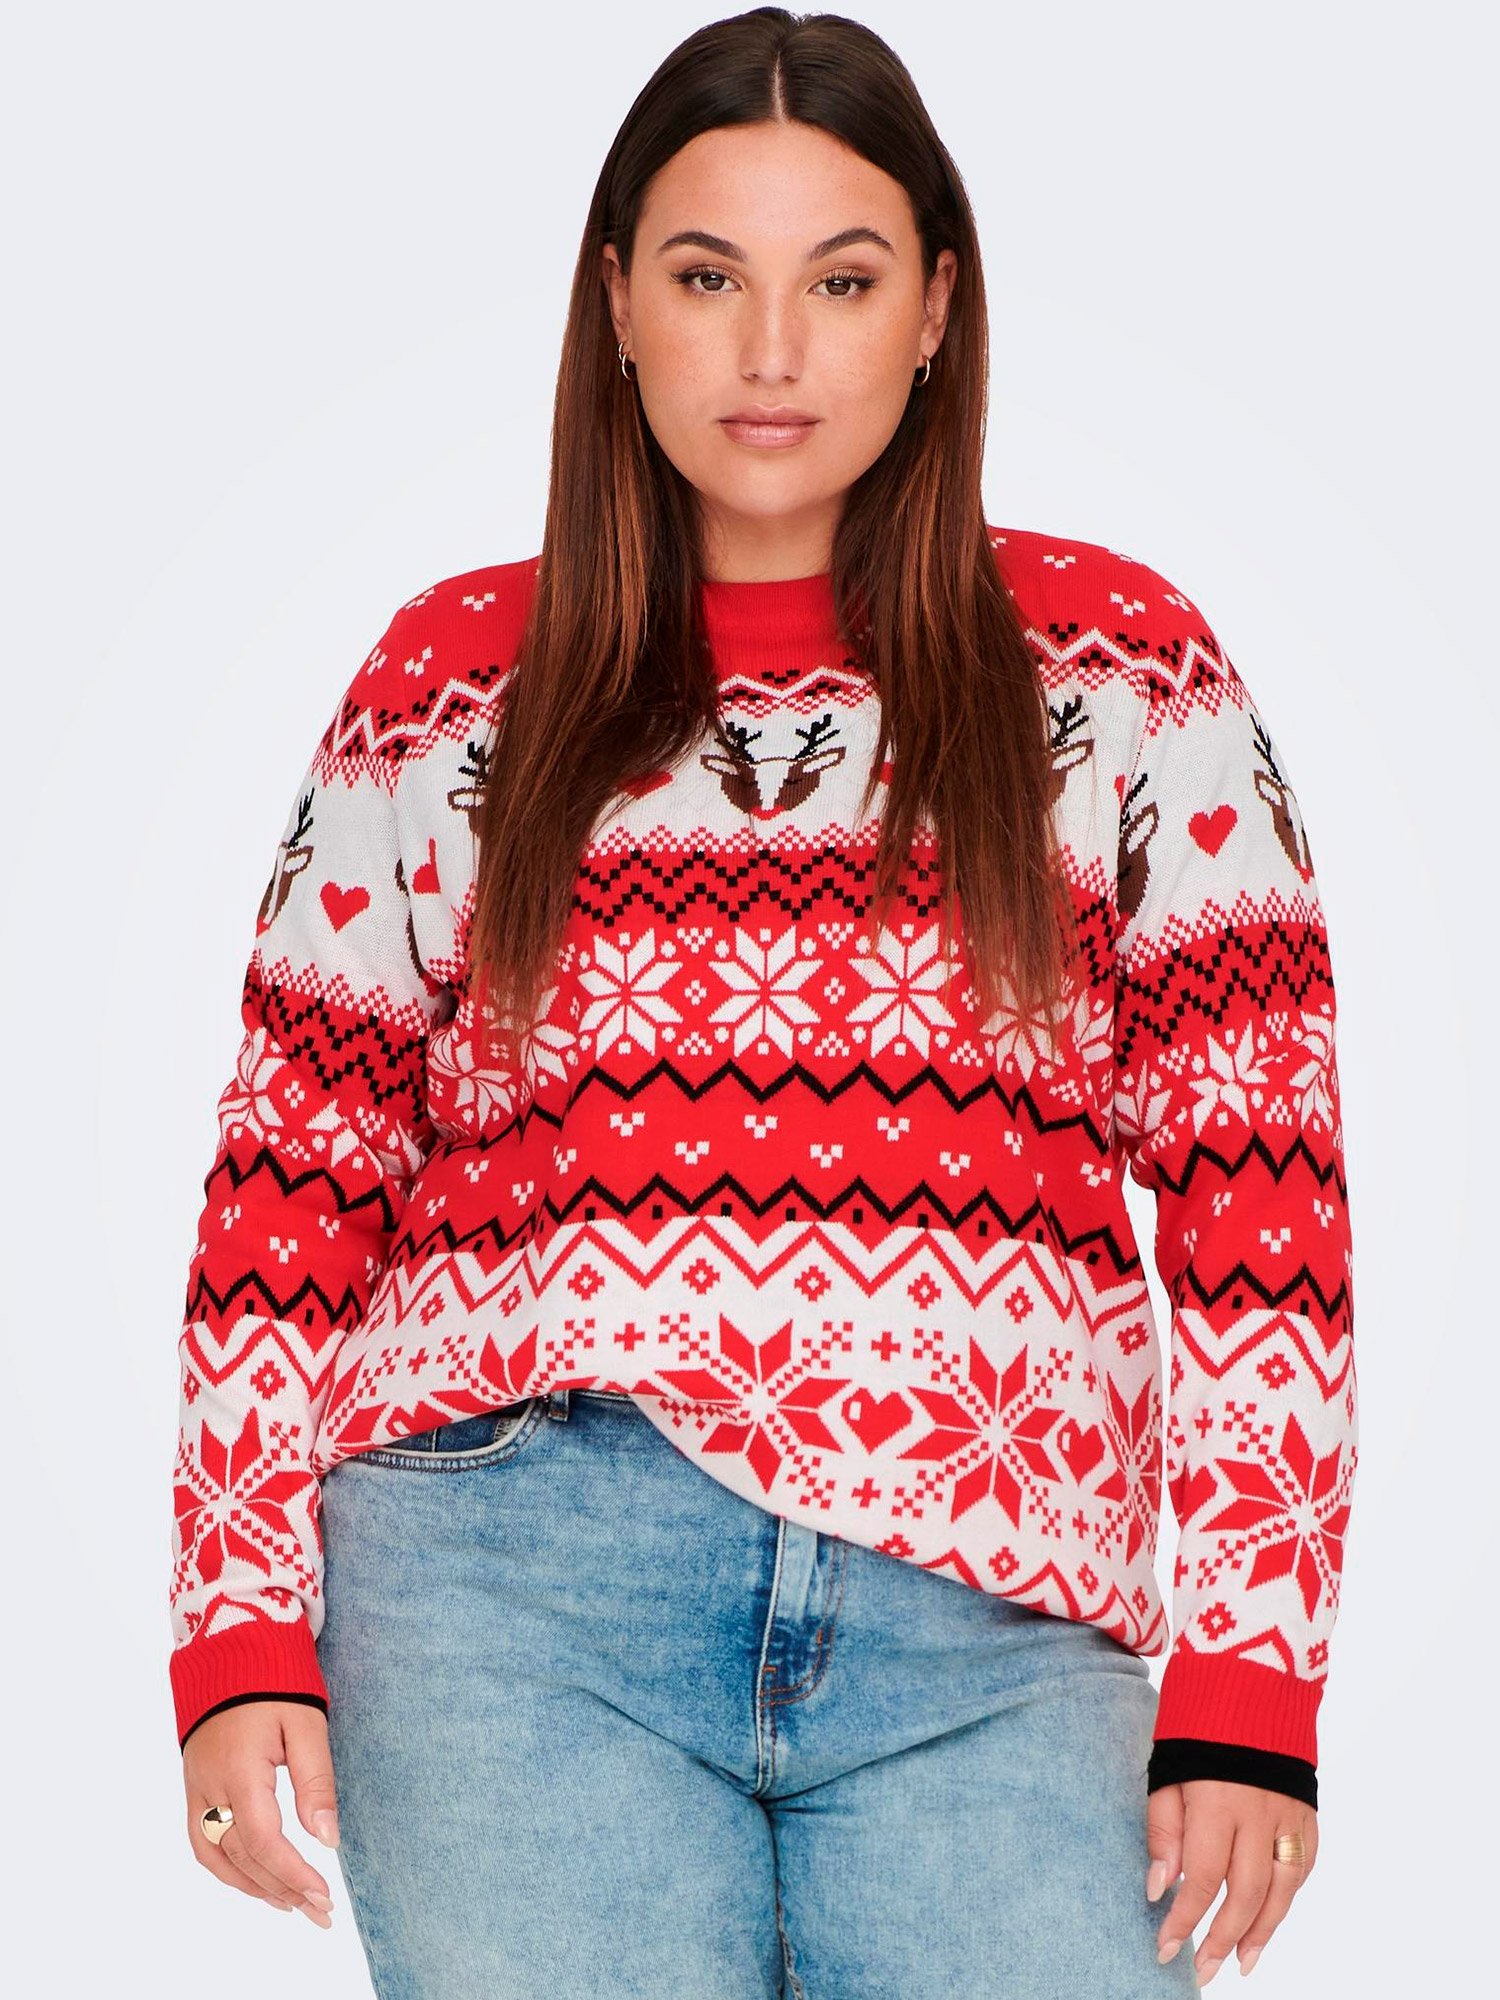 Car SNOW - blå strikket genser med fint jule mønster